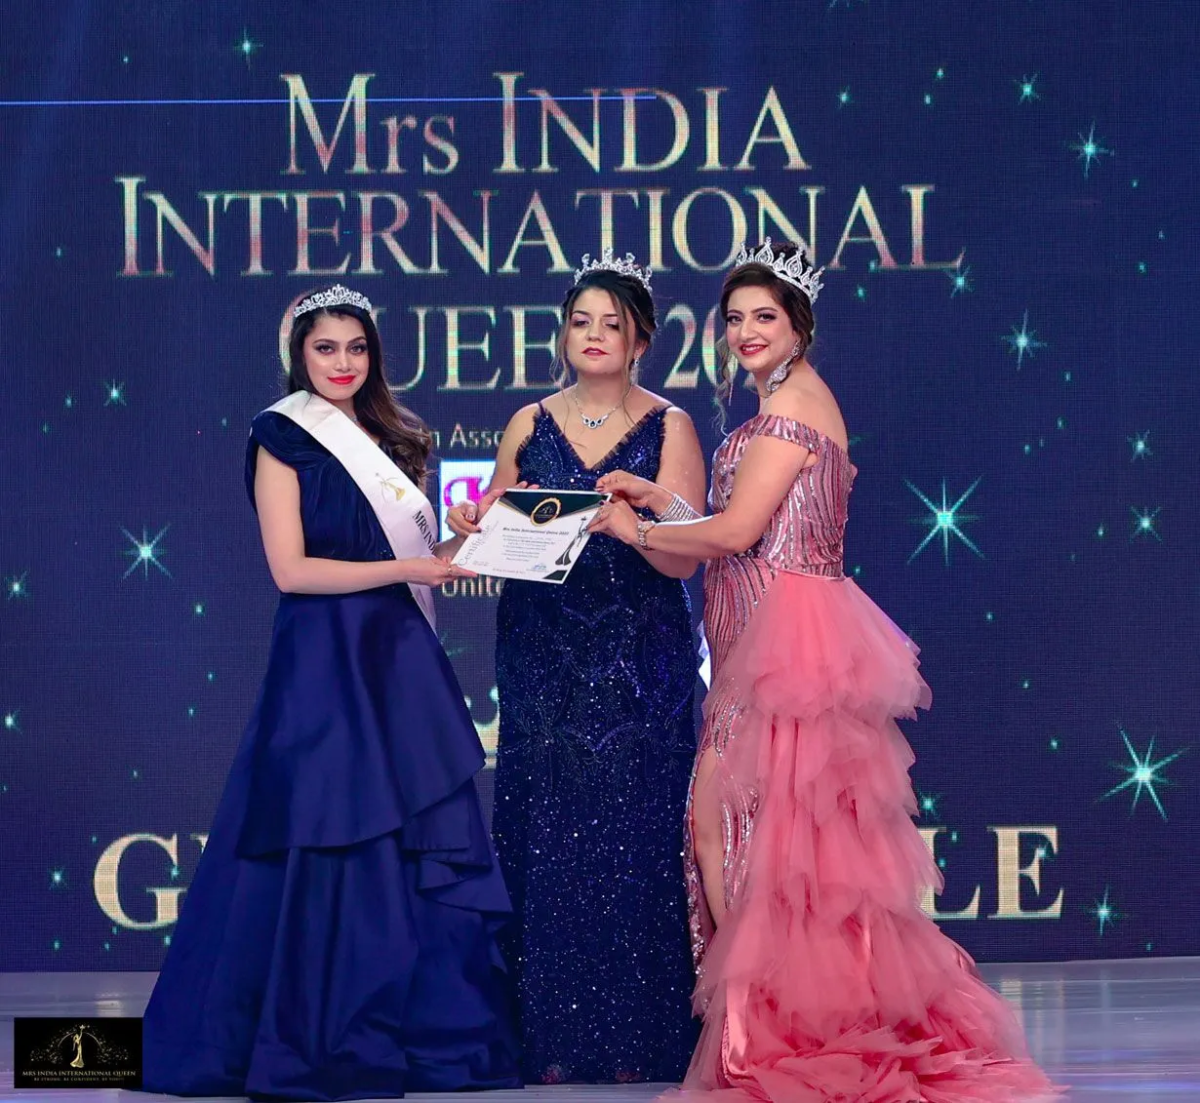 Mrs India global